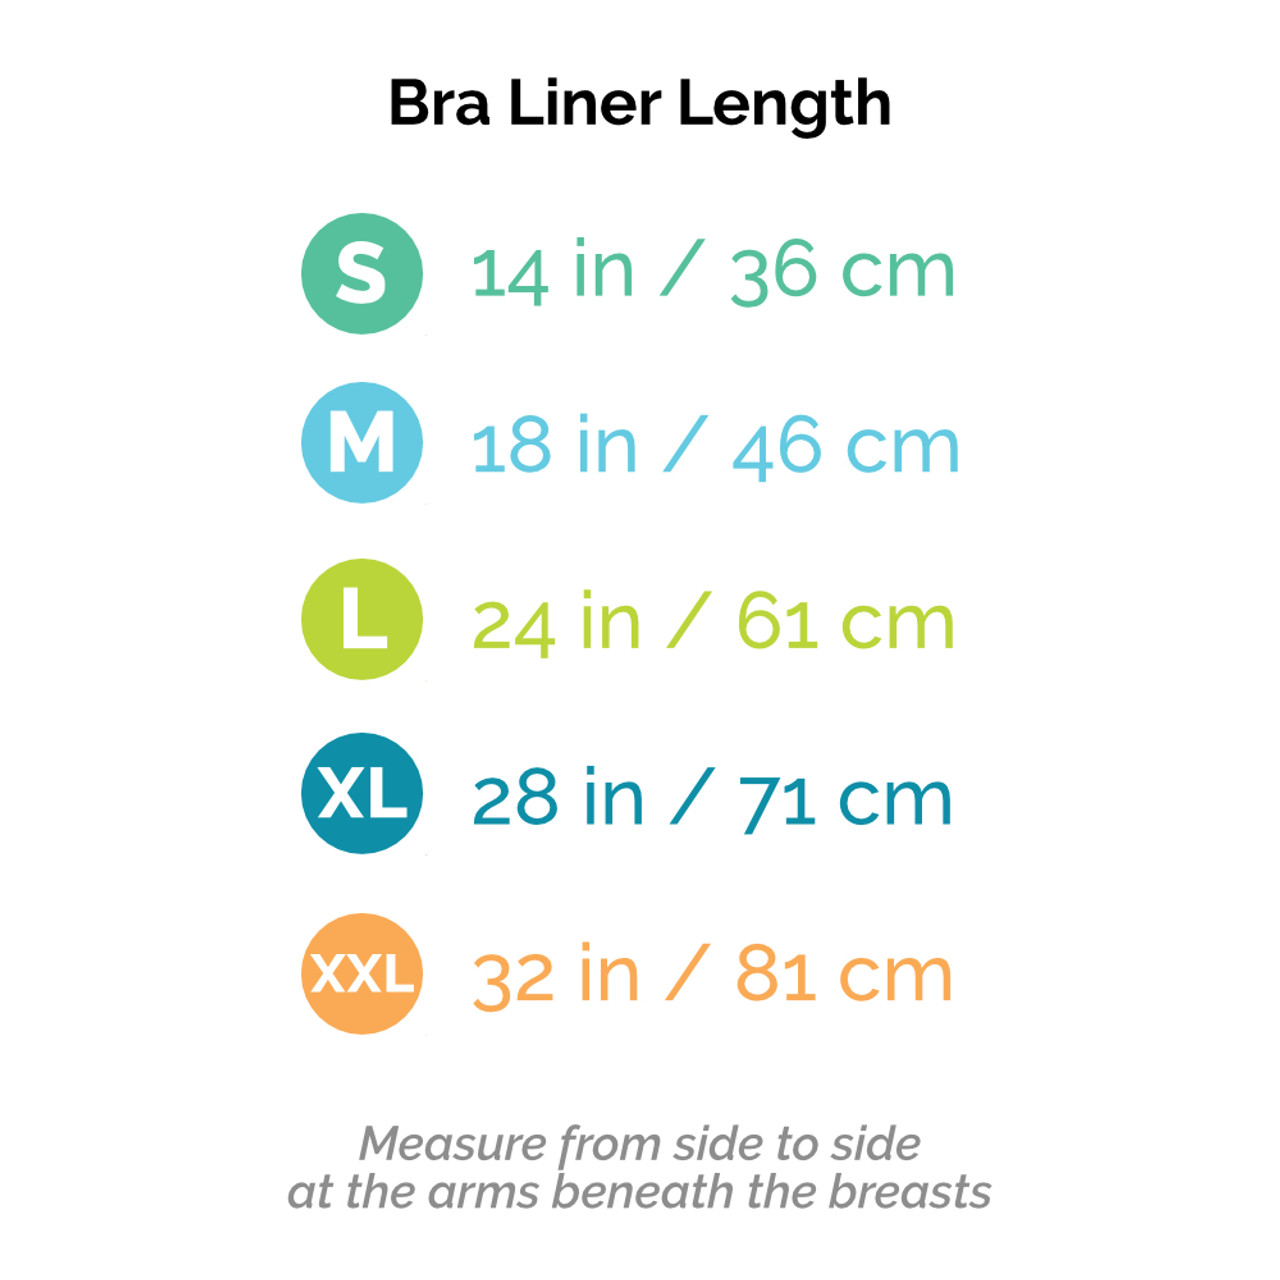 Shop Bra Liners by Klevij - 3 Pack Bundle